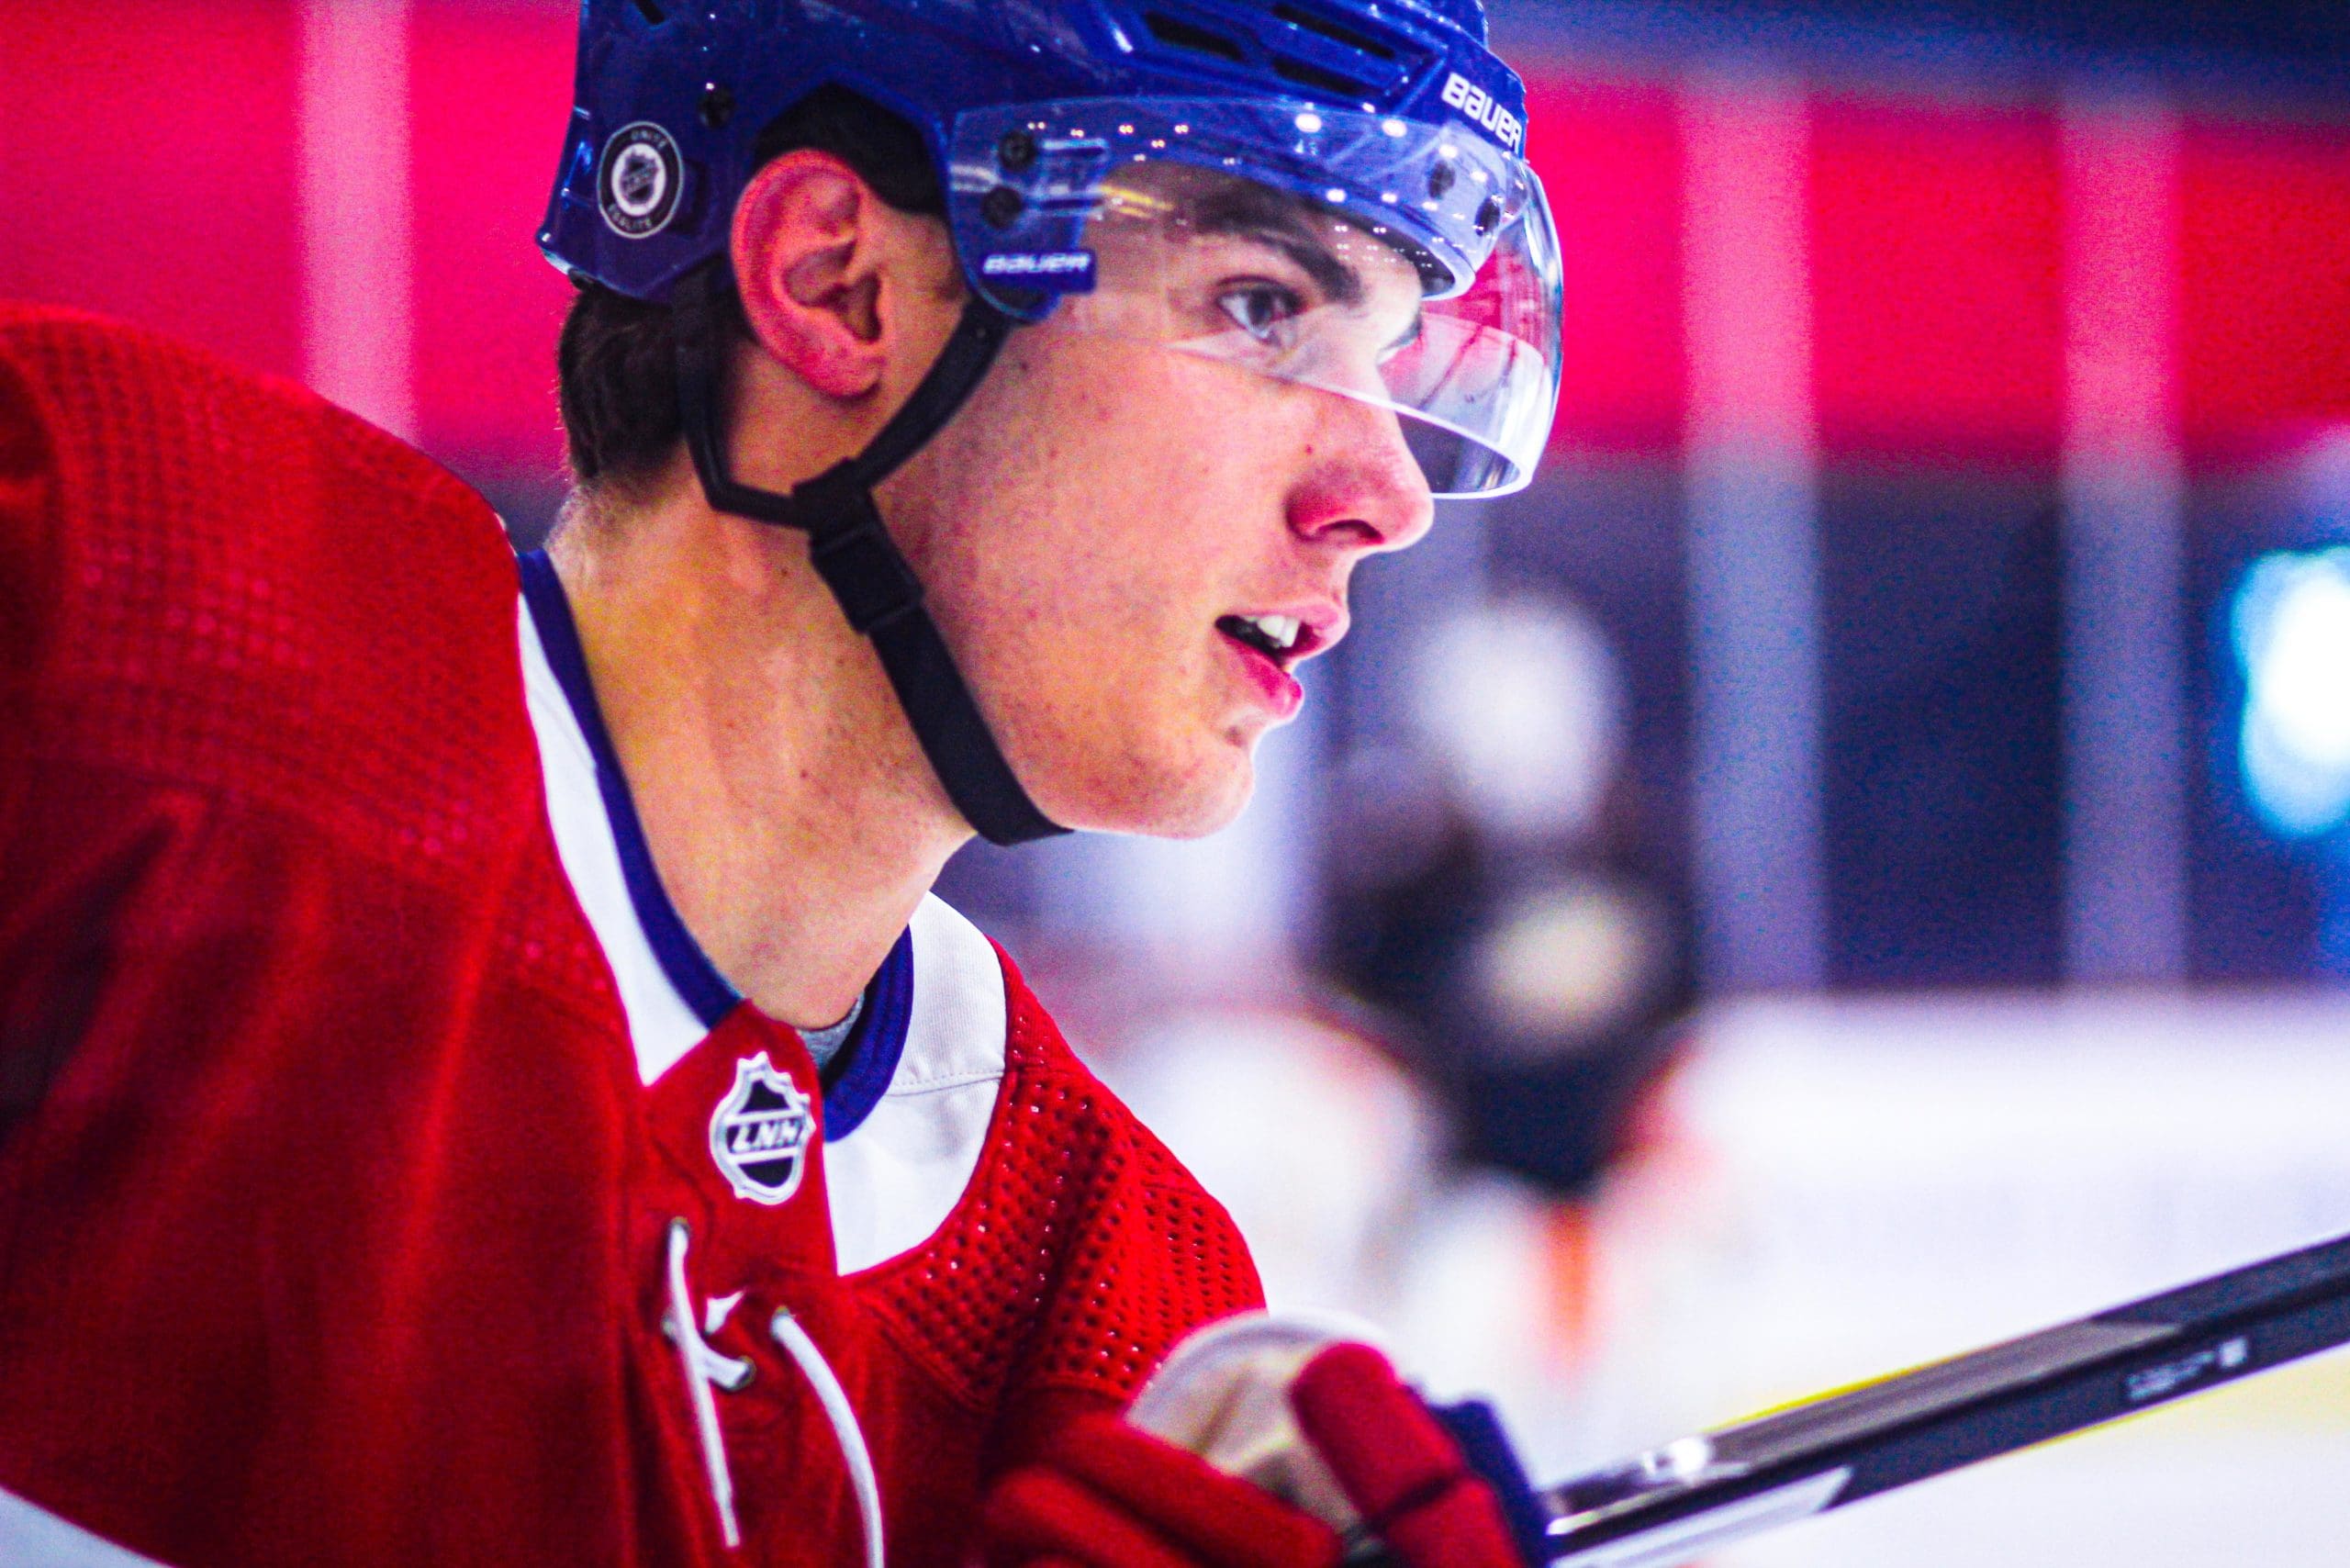 Canadiens take Juraj Slafkovsky with top pick in NHL draft –